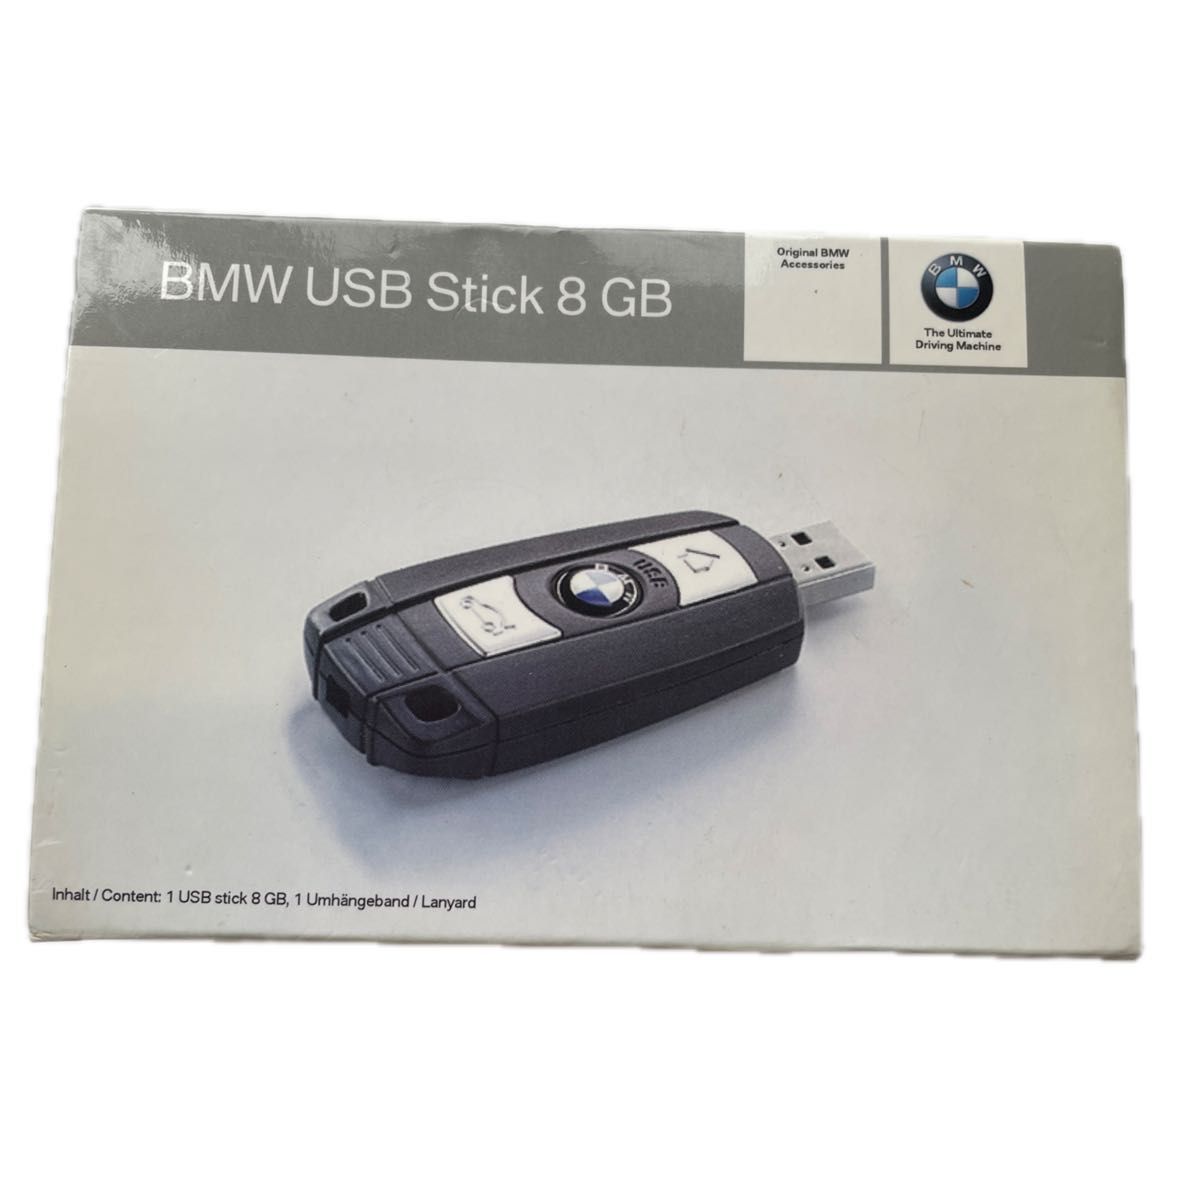 BMW USB stick 8 GB レア 未使用 キー型 メモリー ケース付 訳あり 